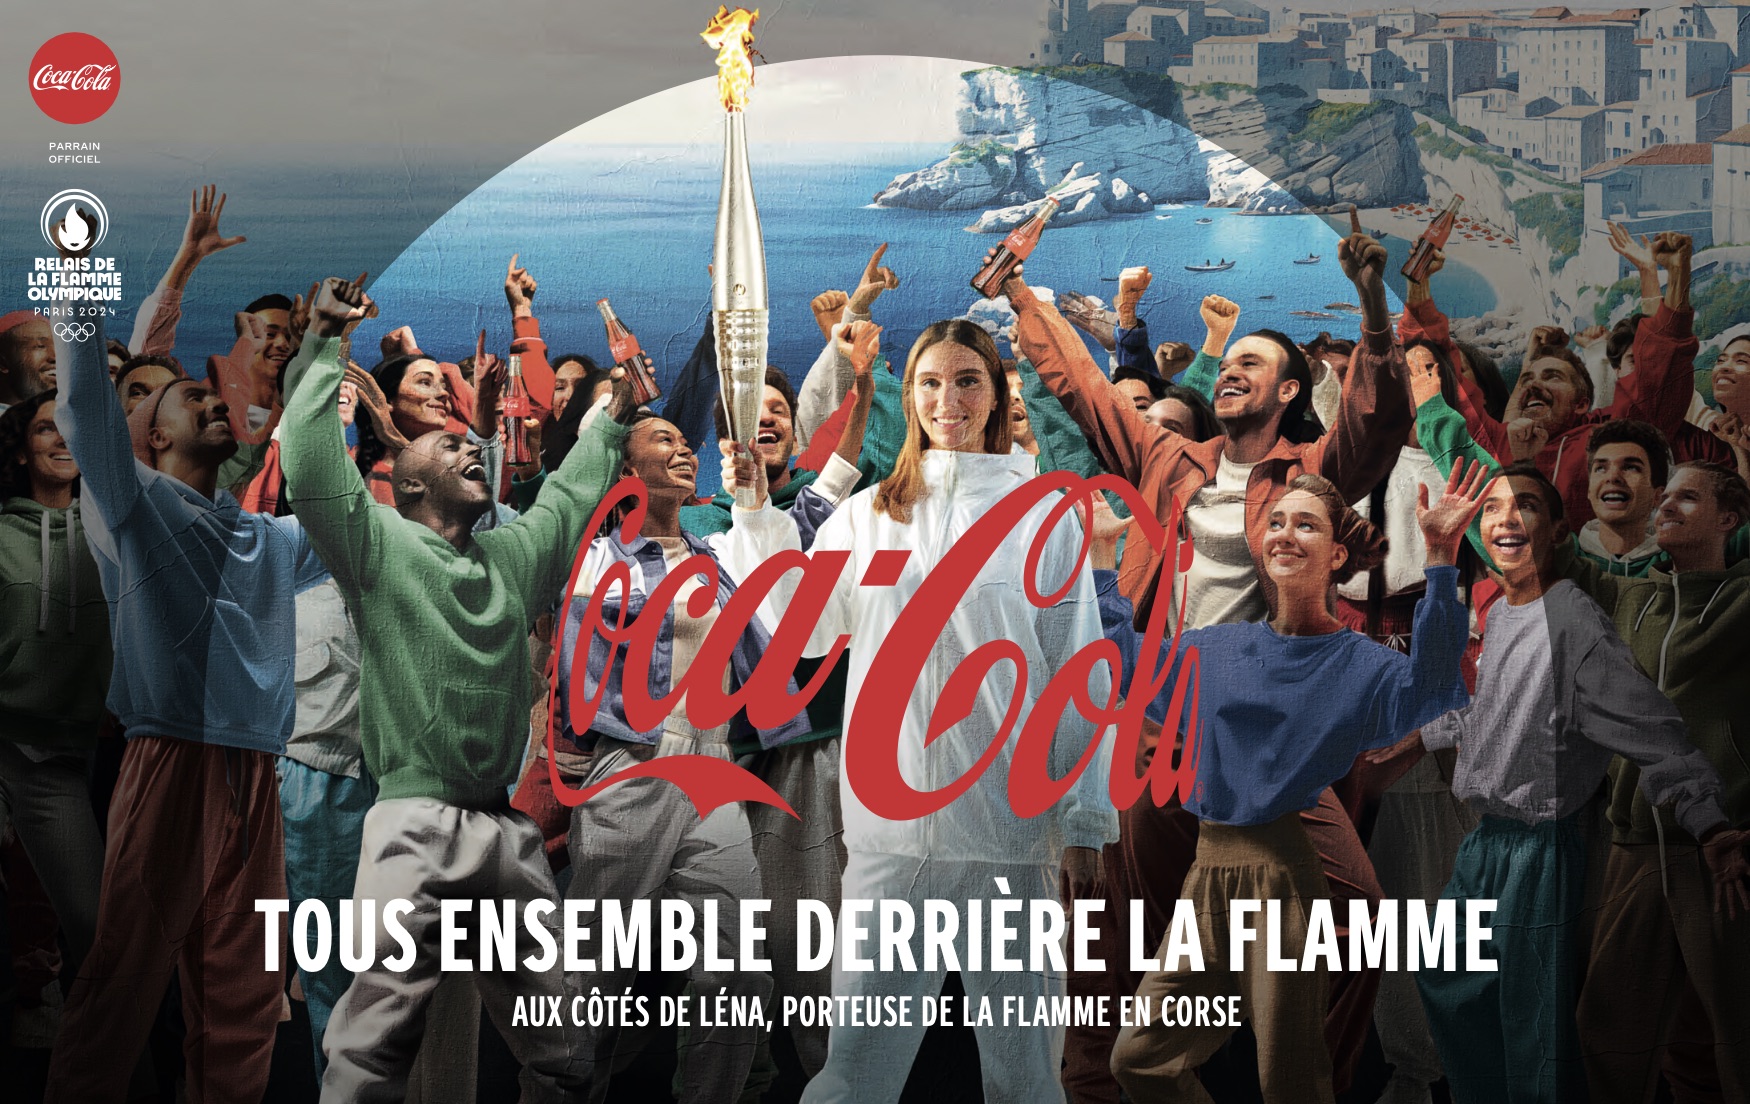 Coca-Cola - Porteur de la Flamme Olympique de Paris 2024